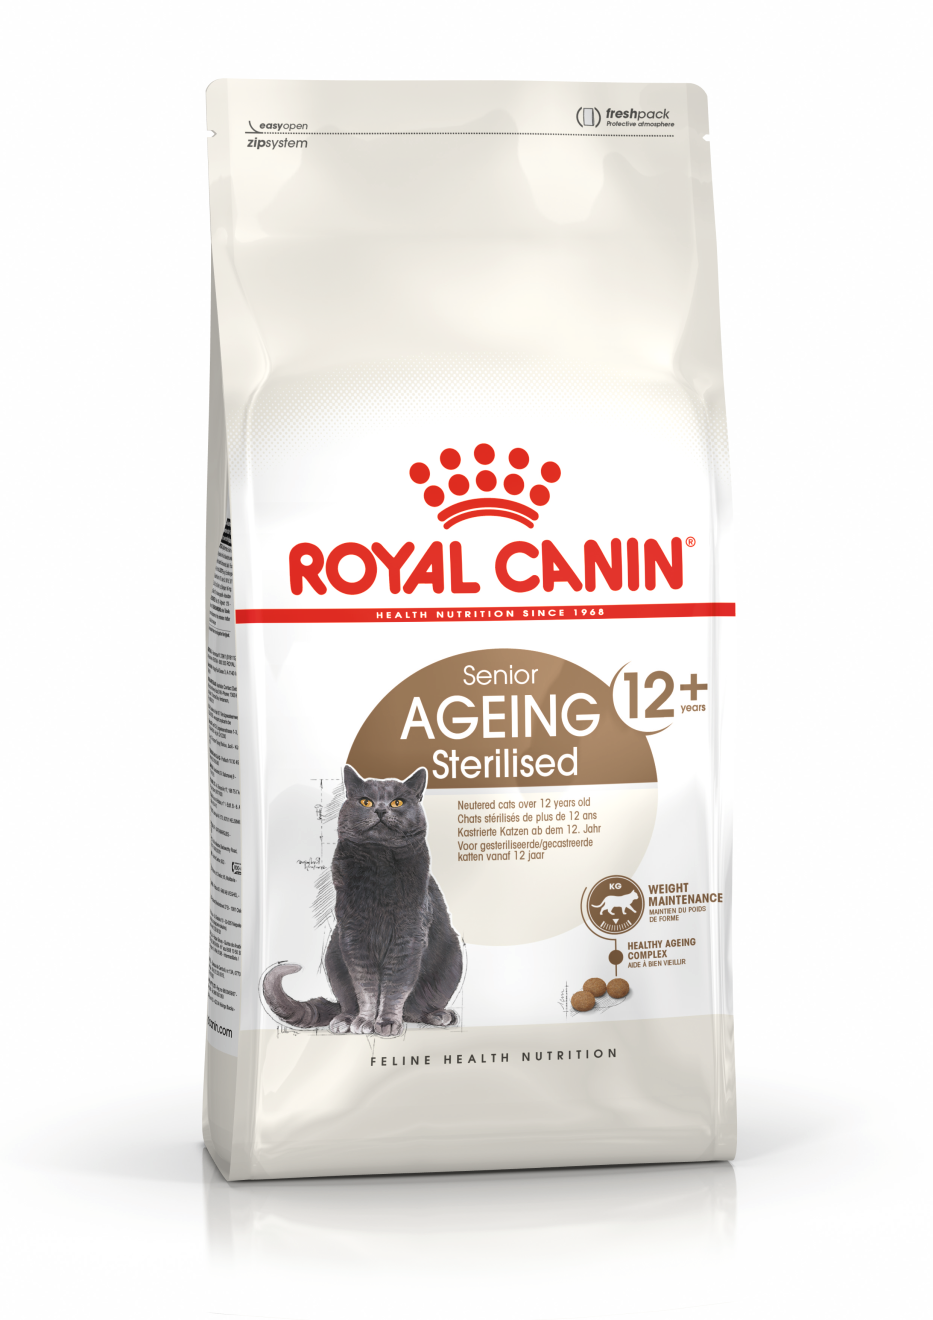 Royal Canin Ageing Sterilised 12+ - Aliment pour chats seniors stérilisés de plus de 12 ans. - 2kg